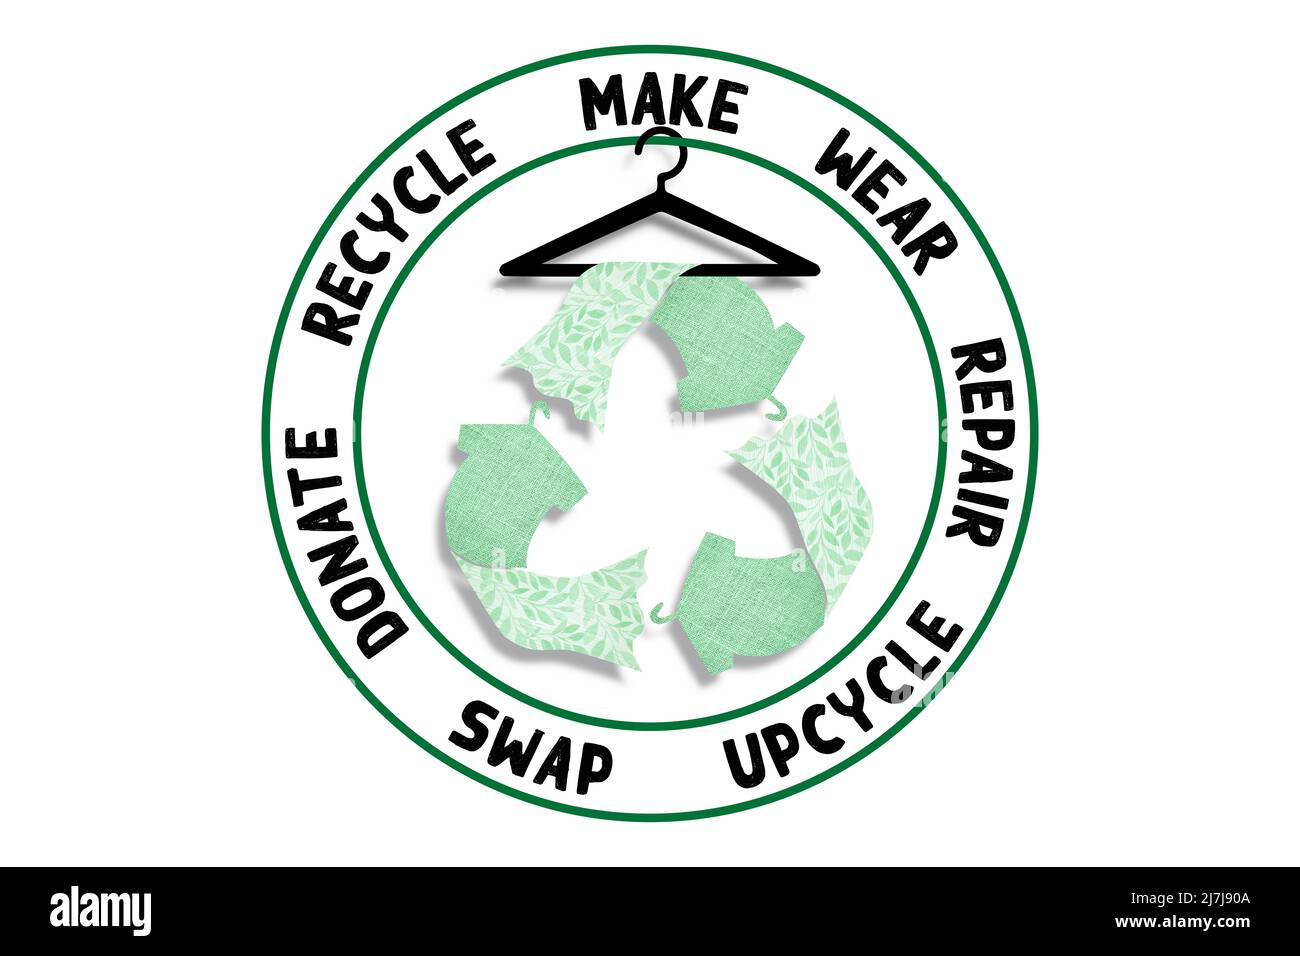 Circolare Moda, fare, indossare, riparazione, upcycle, swap, donare, riciclare con abbigliamento icona riciclaggio concetto di moda sostenibile Foto Stock